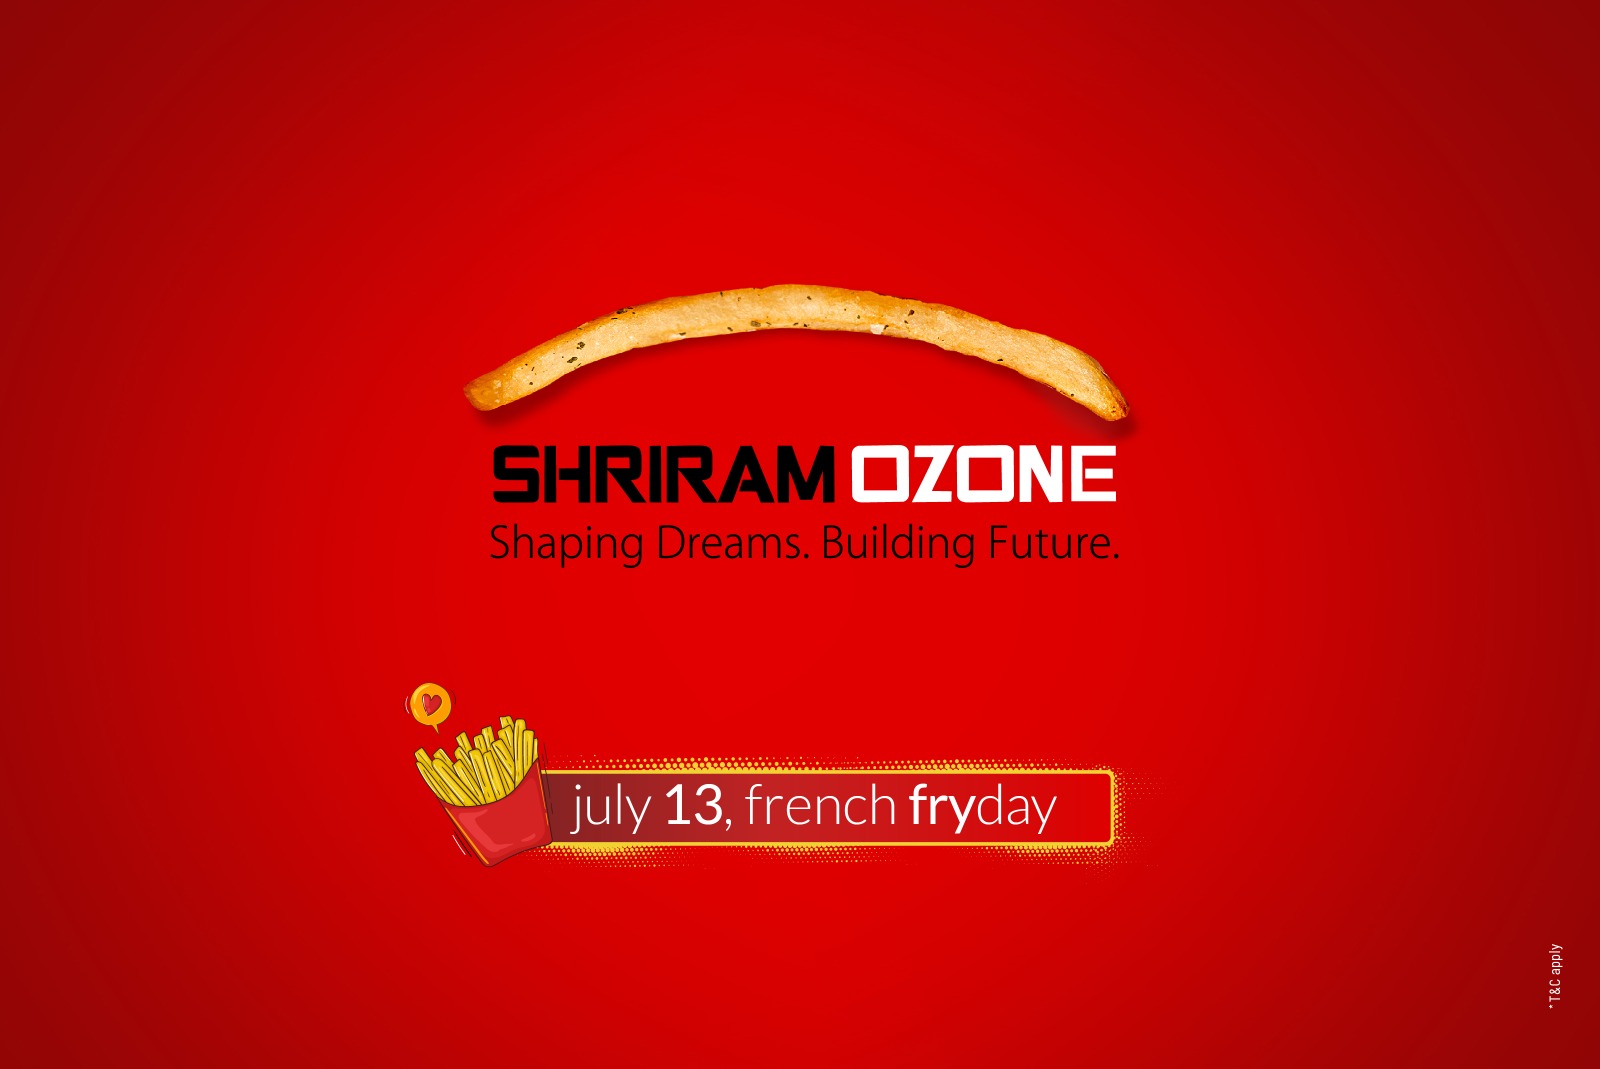 French Fry Day by Shriram Ozone